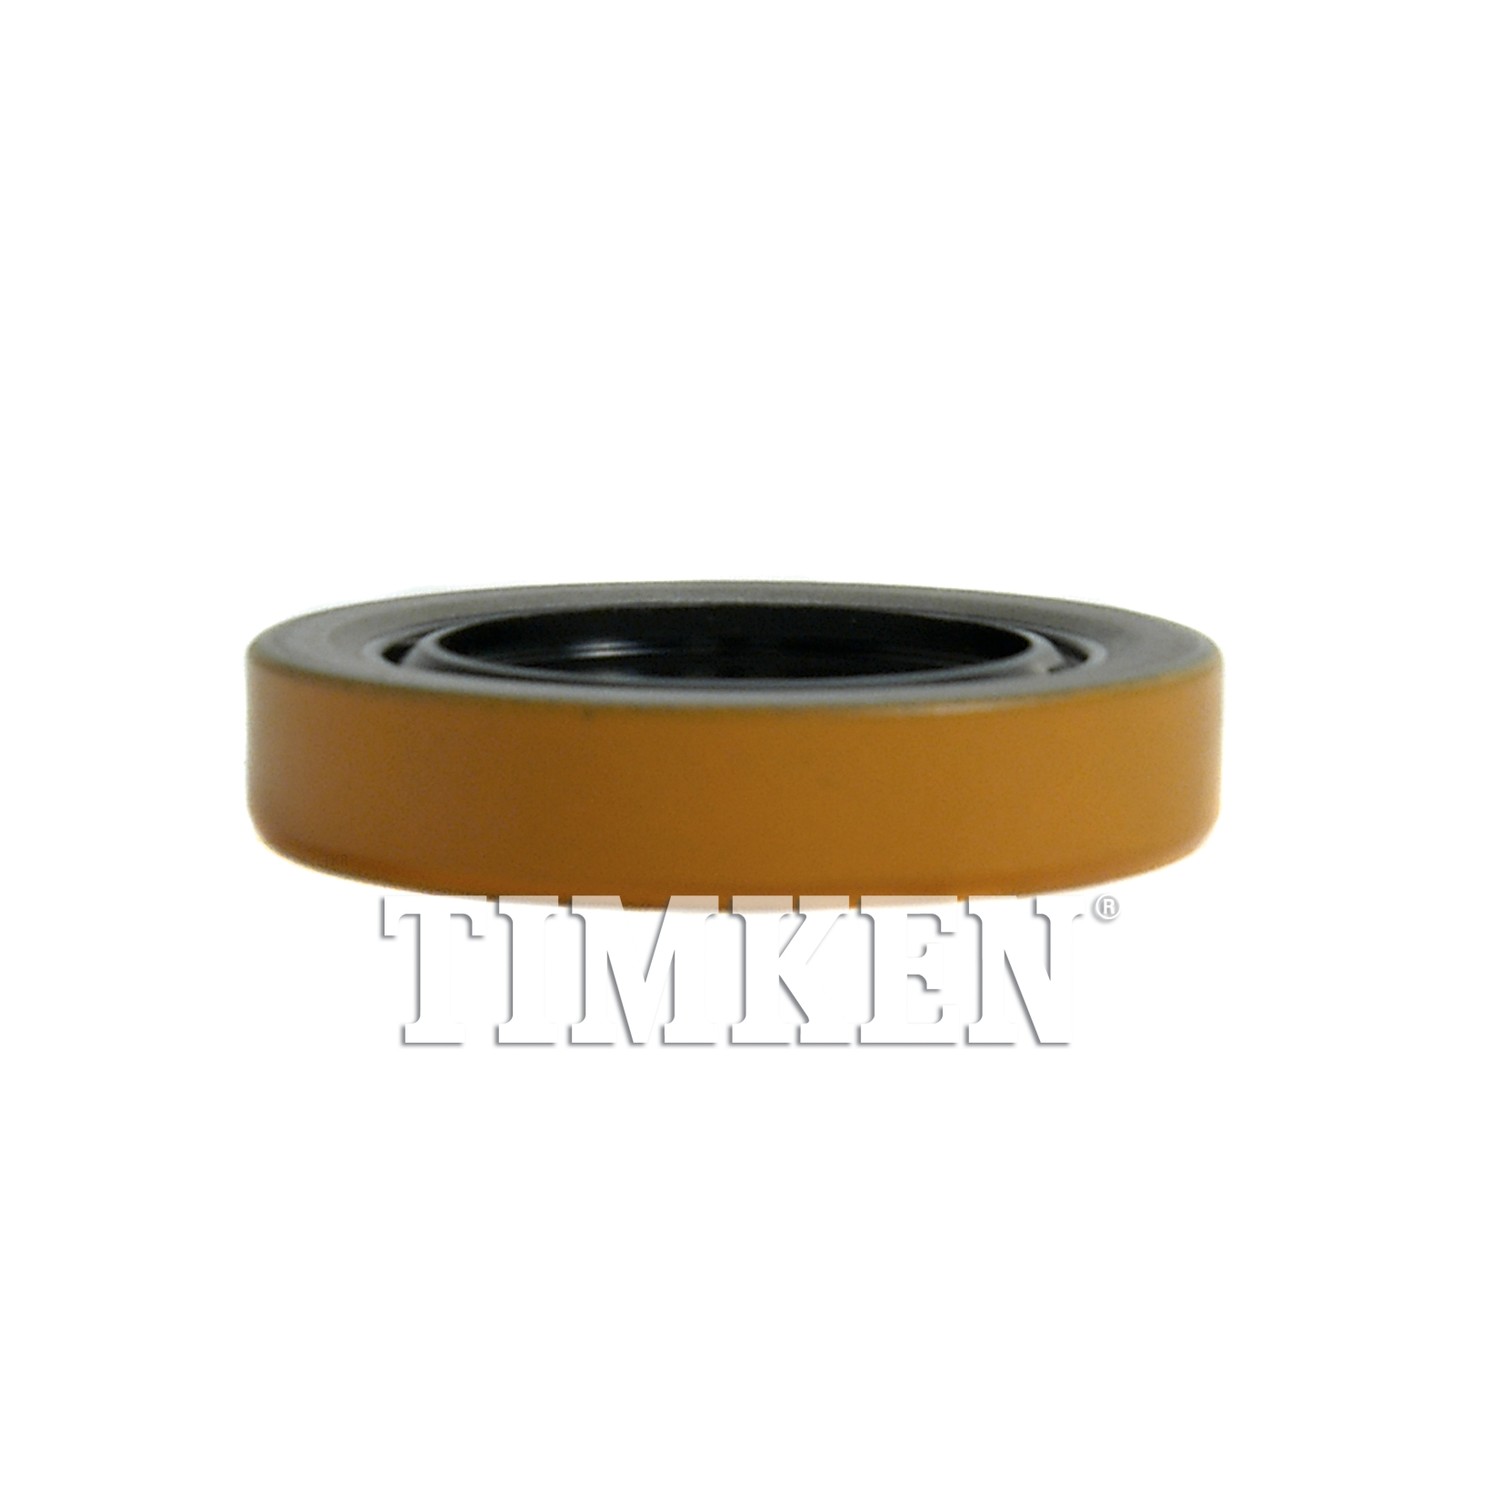 TIMKEN - Wheel Seal - TIM 8660S